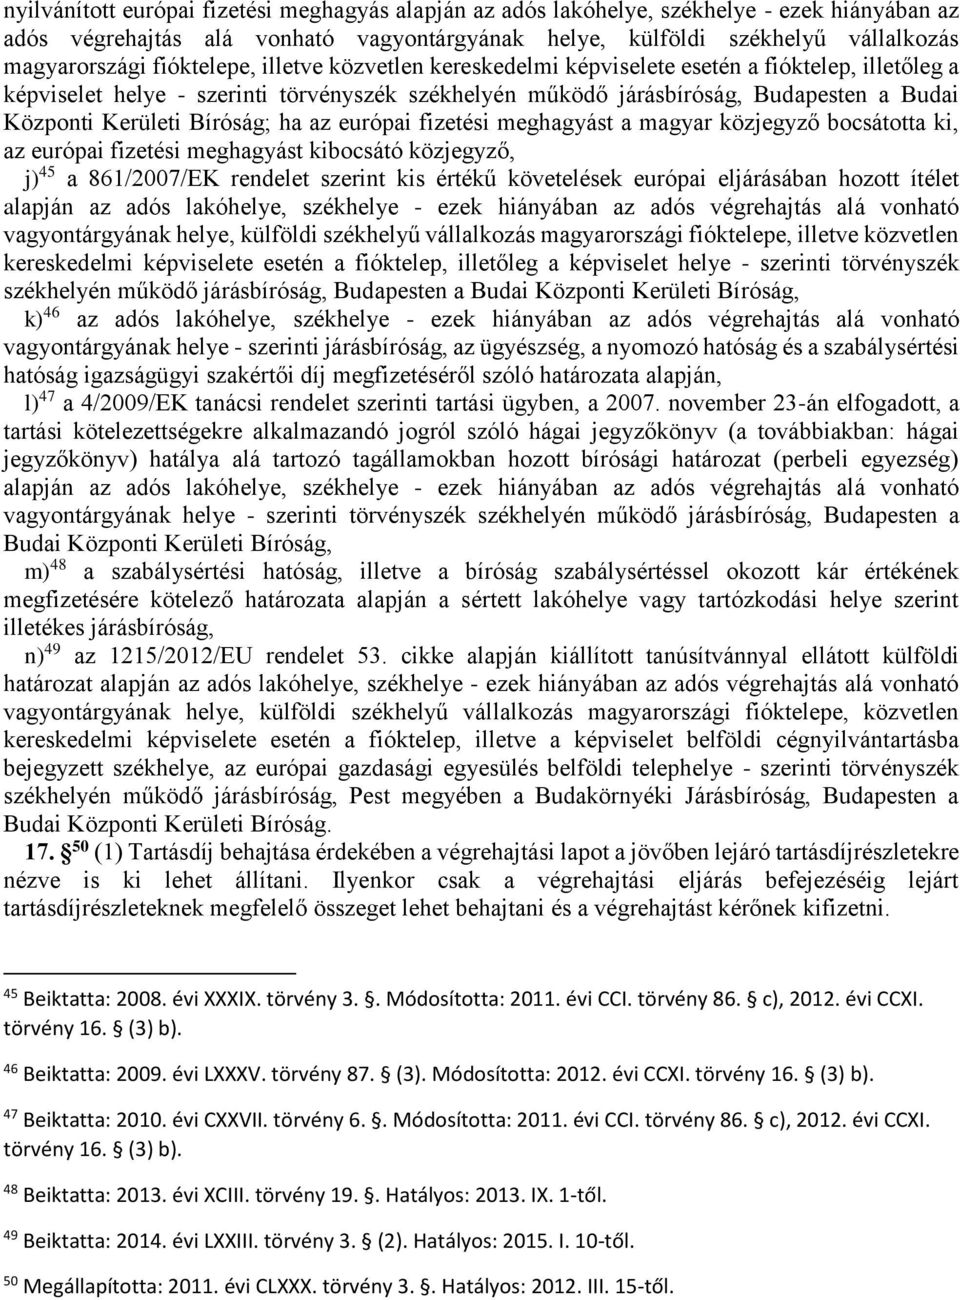 Bíróság; ha az európai fizetési meghagyást a magyar közjegyző bocsátotta ki, az európai fizetési meghagyást kibocsátó közjegyző, j) 45 a 861/2007/EK rendelet szerint kis értékű követelések európai